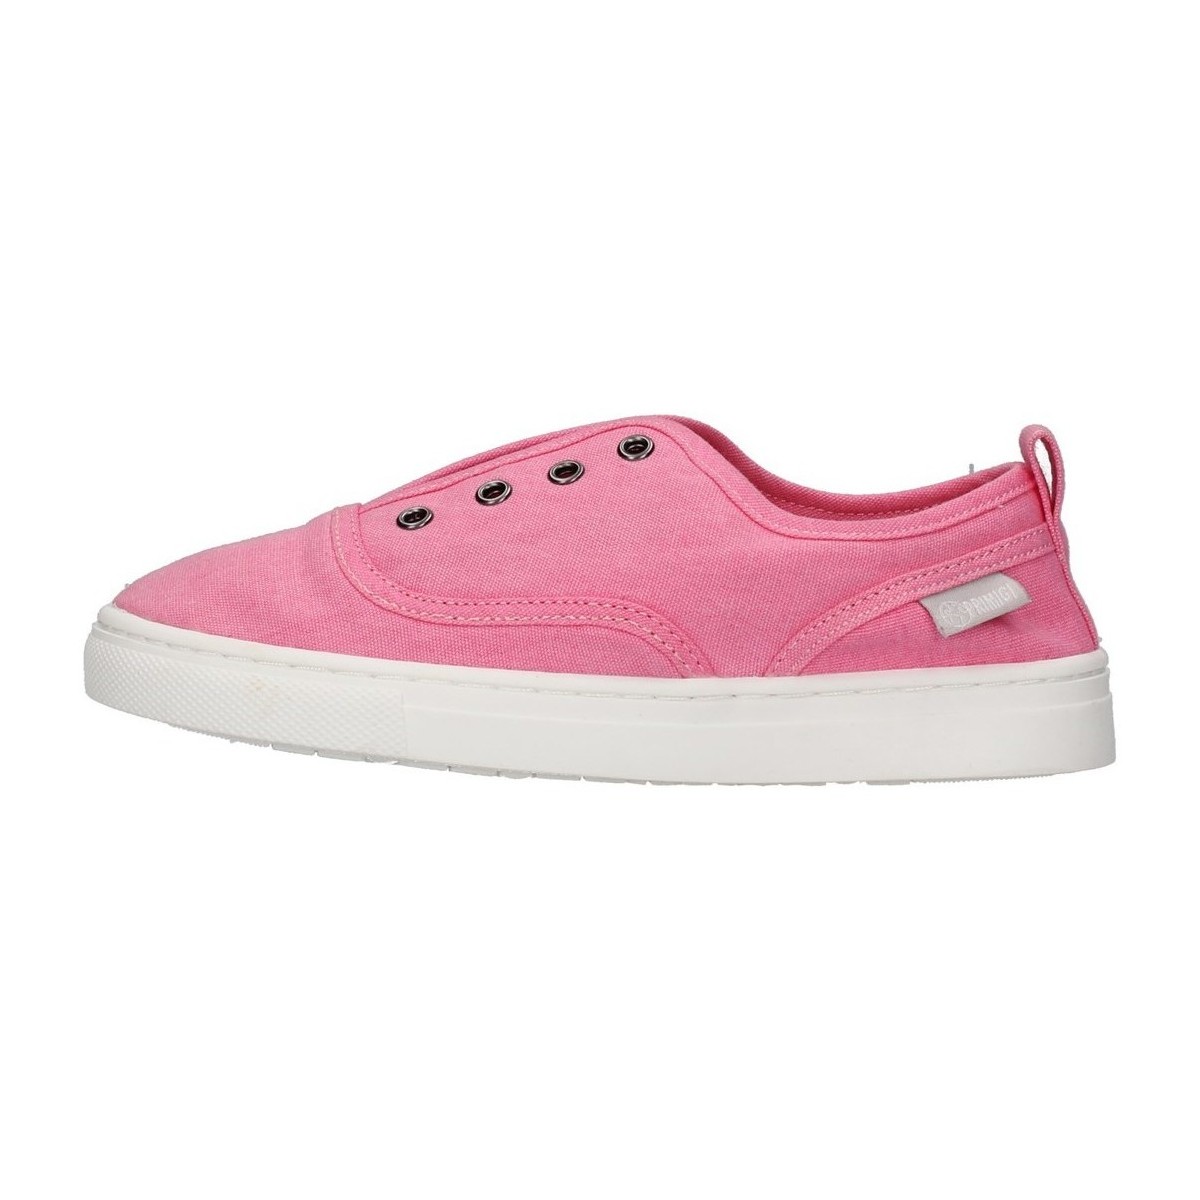 Cipők Lány Rövid szárú edzőcipők Primigi 1960000 Rózsaszín